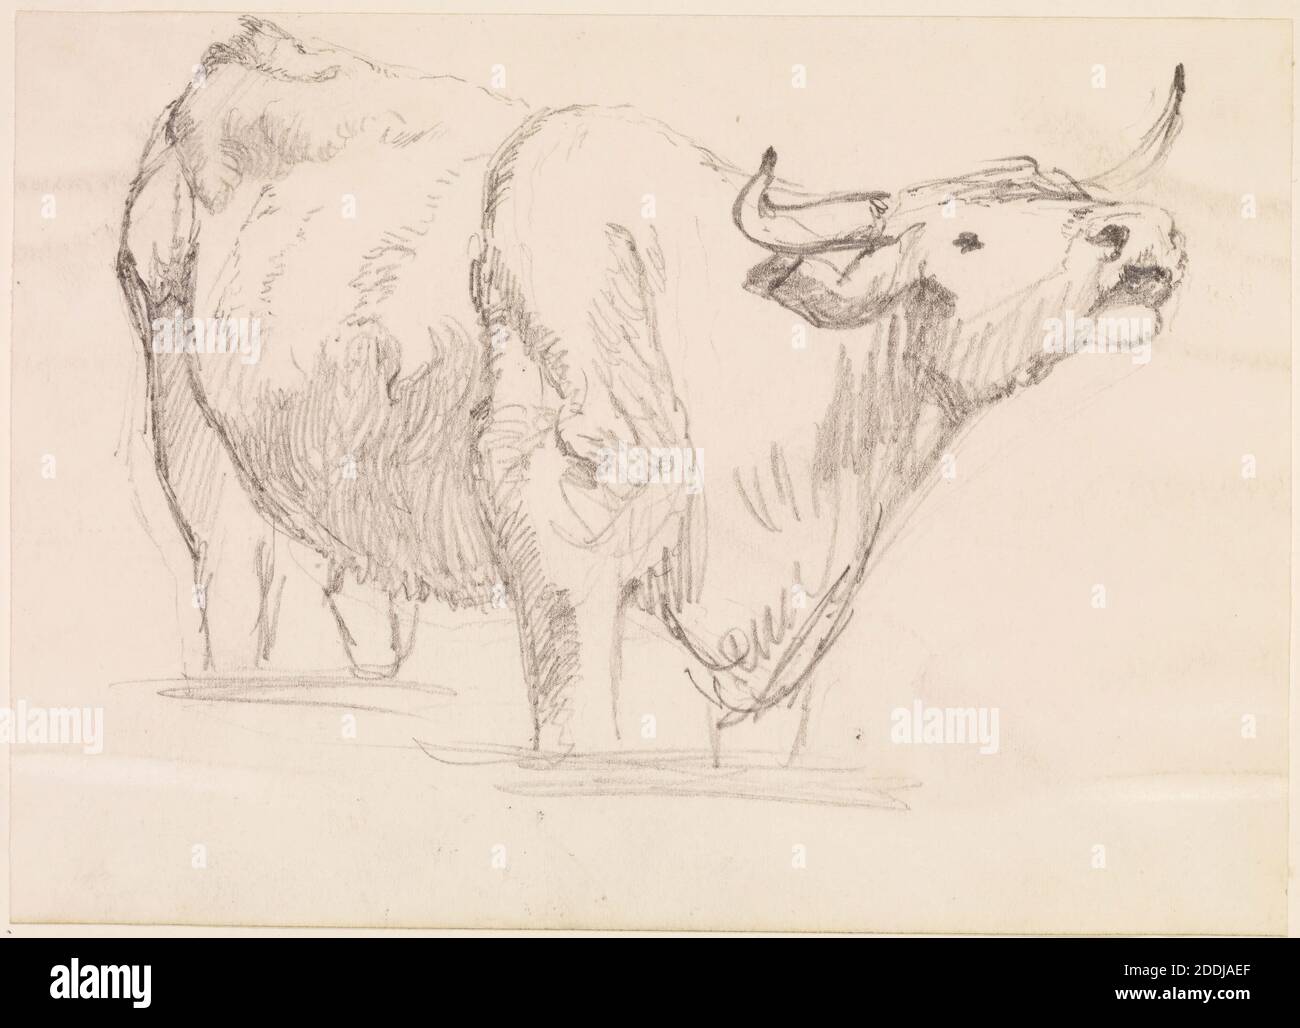 Etude d'une vache, 1857-58 Frederick Sandys, mouvement artistique, pré-Raphaelite, dessin, crayon, esquisse, animal, vache, Etude, travaux sur papier Banque D'Images